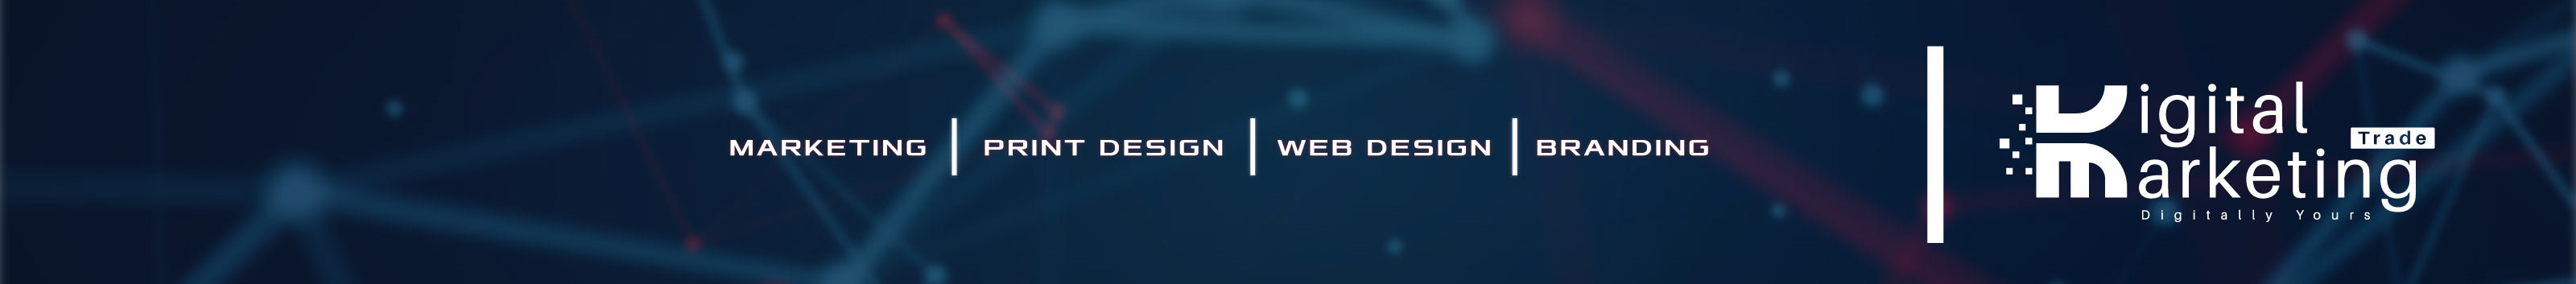 Banner de perfil de Digital Marketing Trade